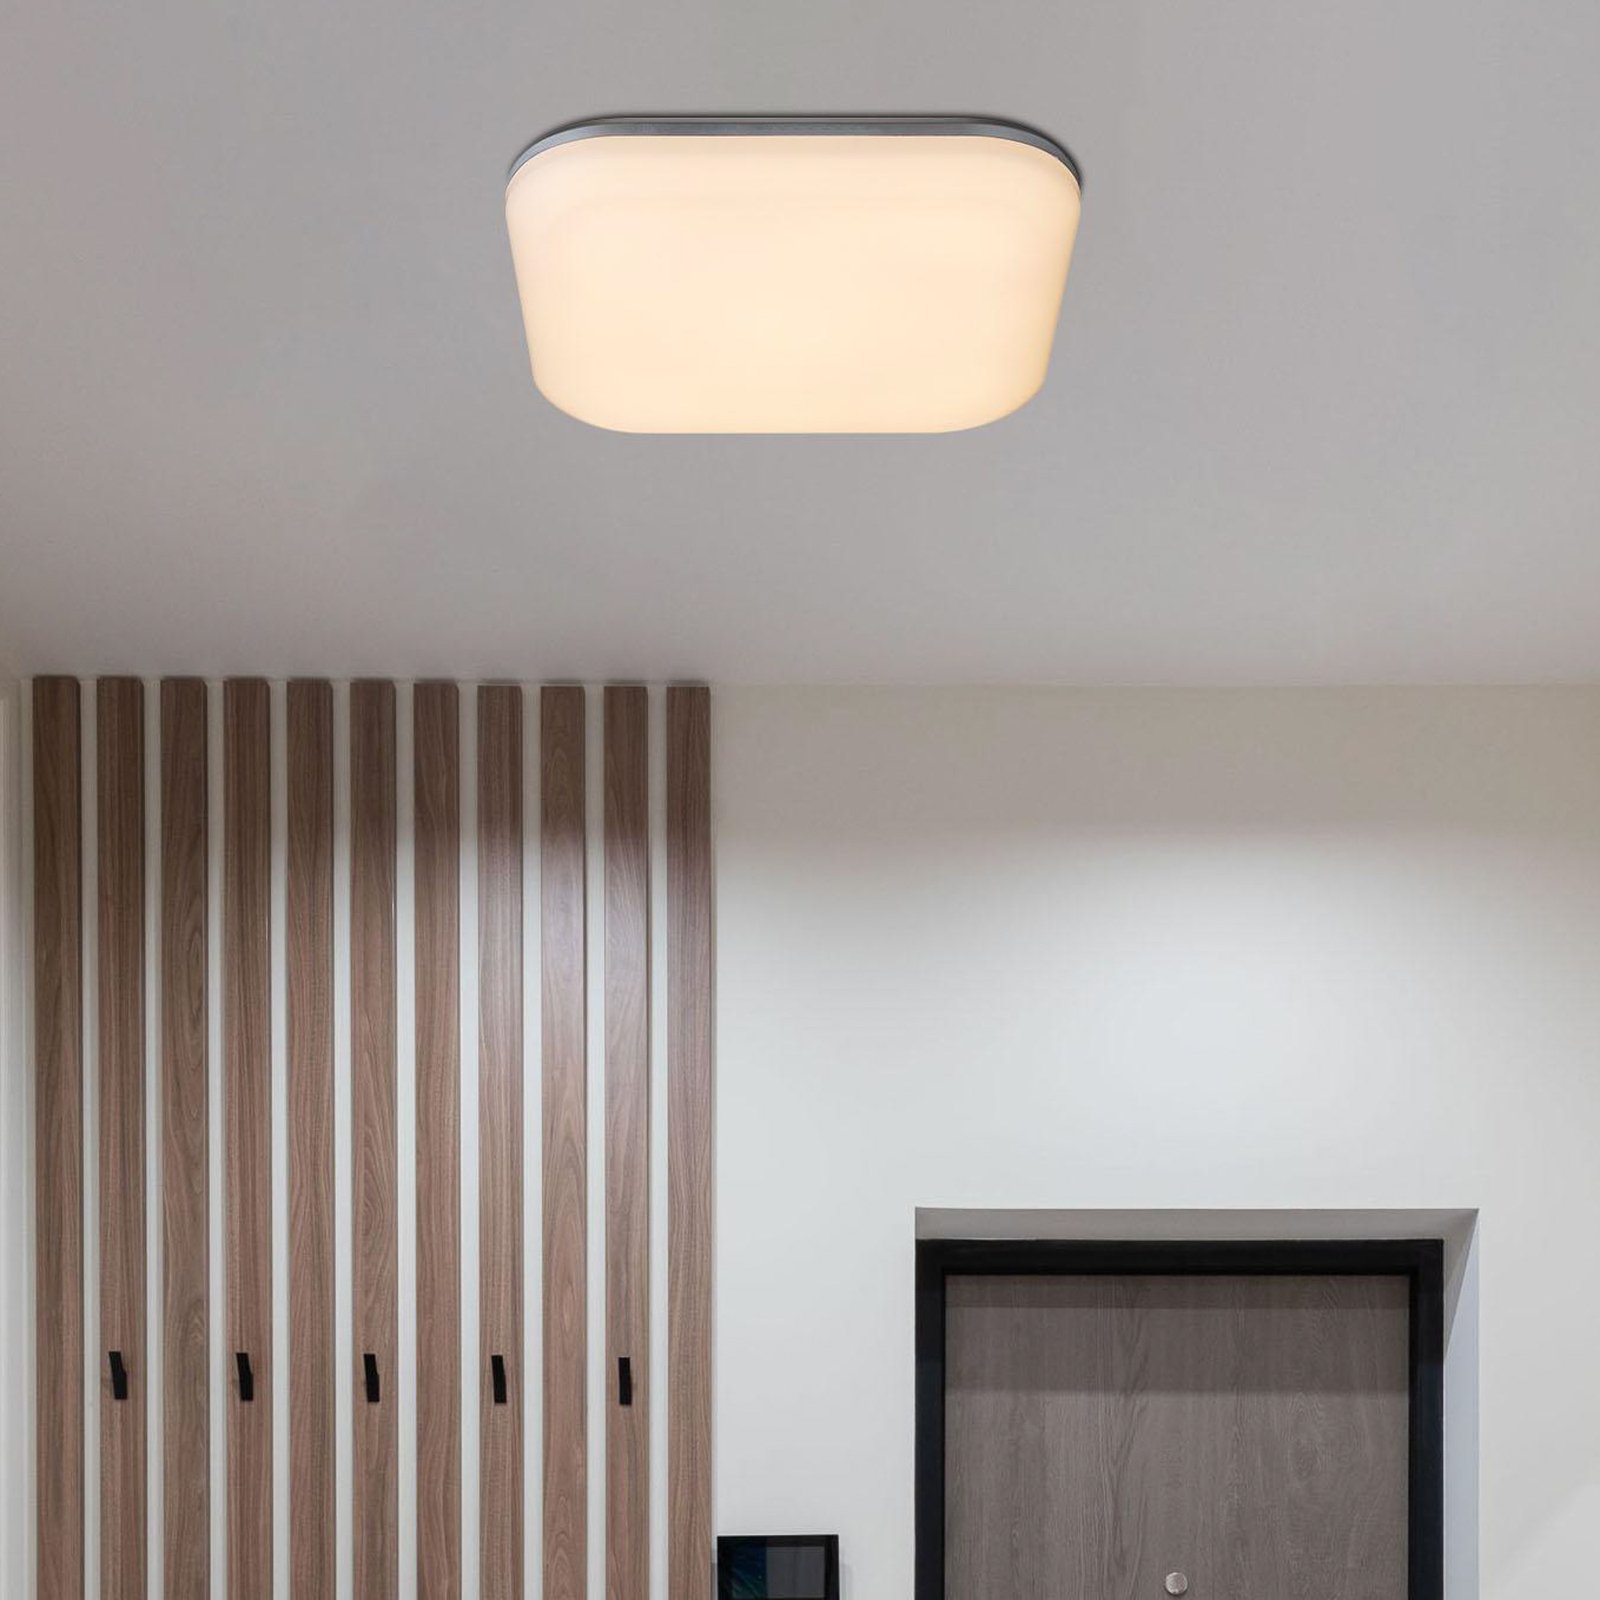 Zewnętrzna lampa sufitowa Dori LED, długość 33 cm, biała, tworzywo sztuczne